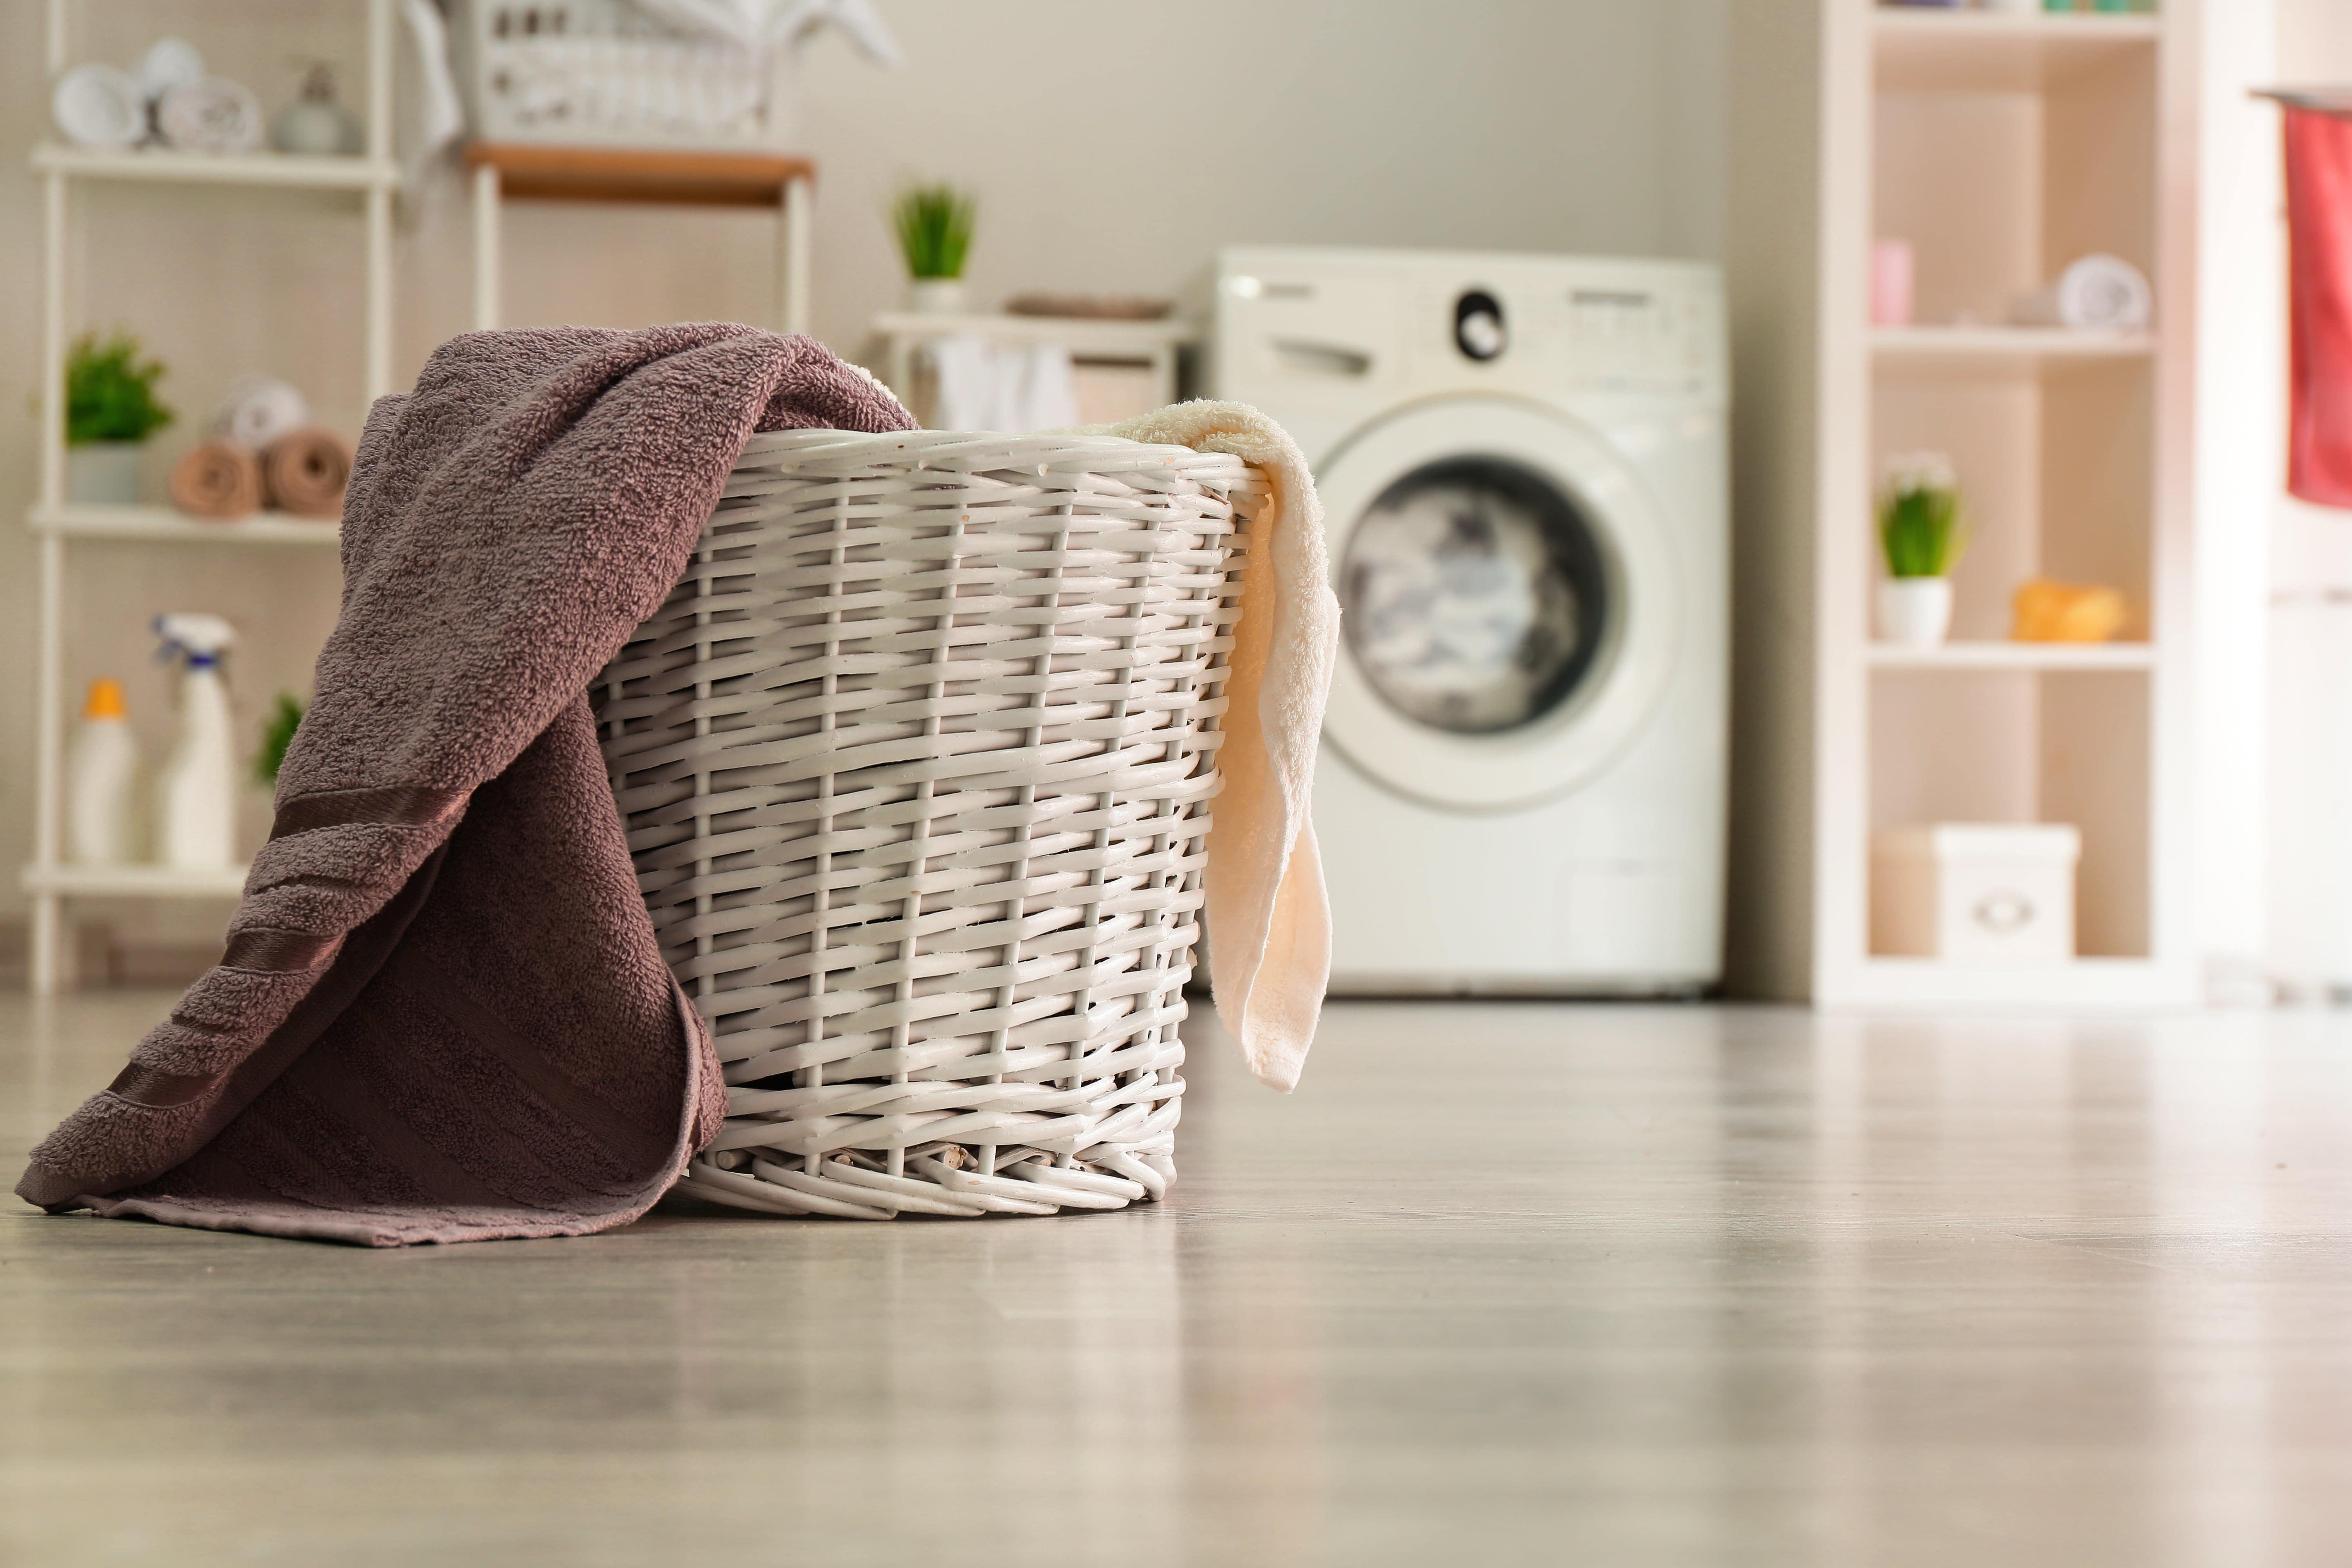 Cómo lavar ropa en lavadora correctamente?